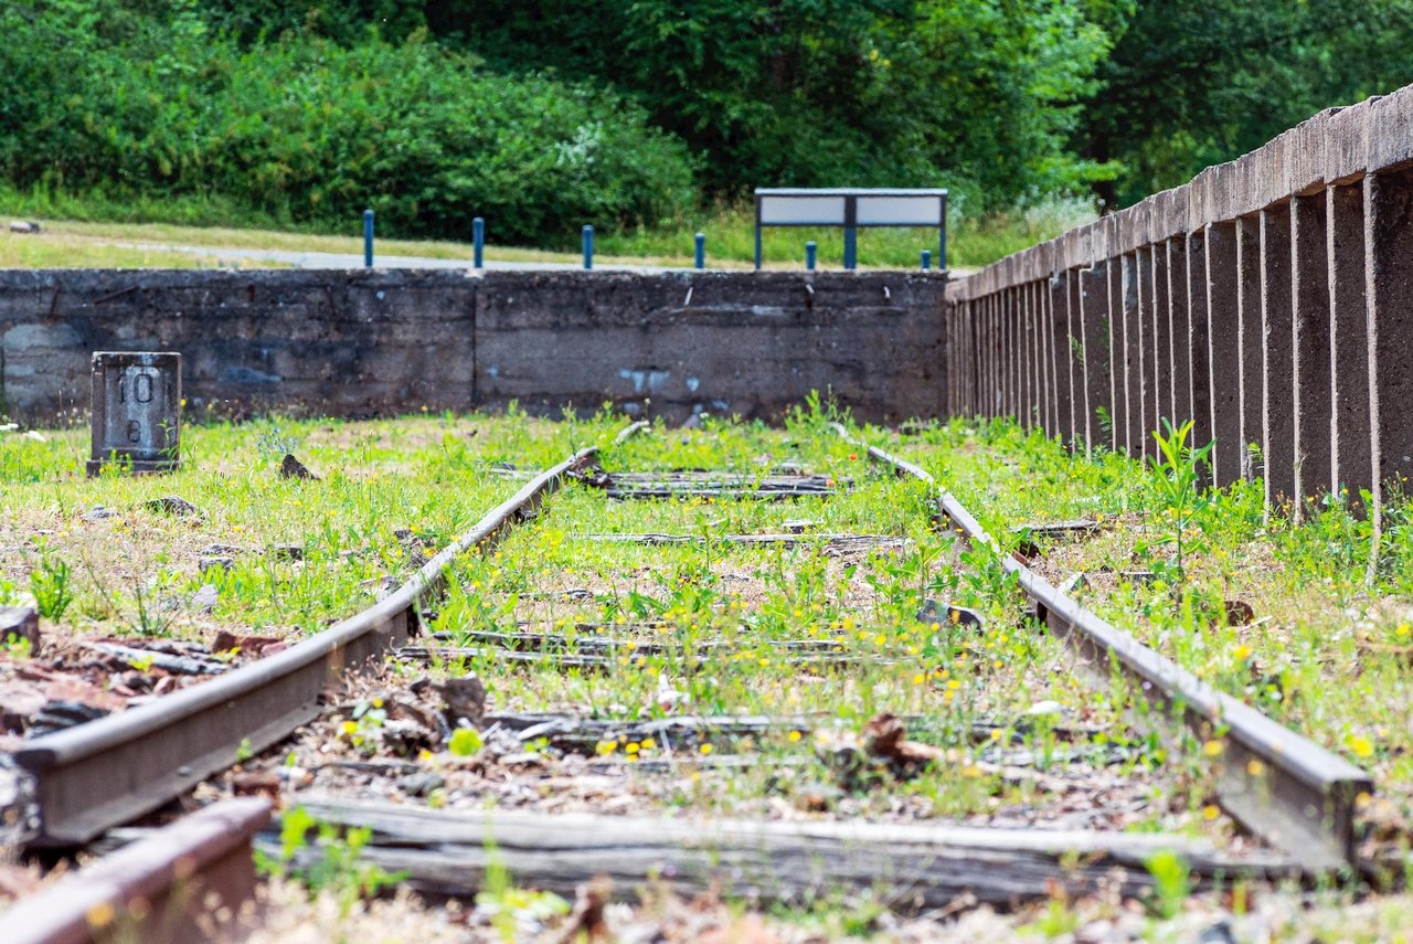 Froschperspektive vom Gleisbett aus. Die Schienen rechts vom hohen Bahnsteig sind verbogen. Zwischen ihnen ragen Graeser hervor. Links ist ein Meilenstein der Buchenwaldbahn zu erkennen.